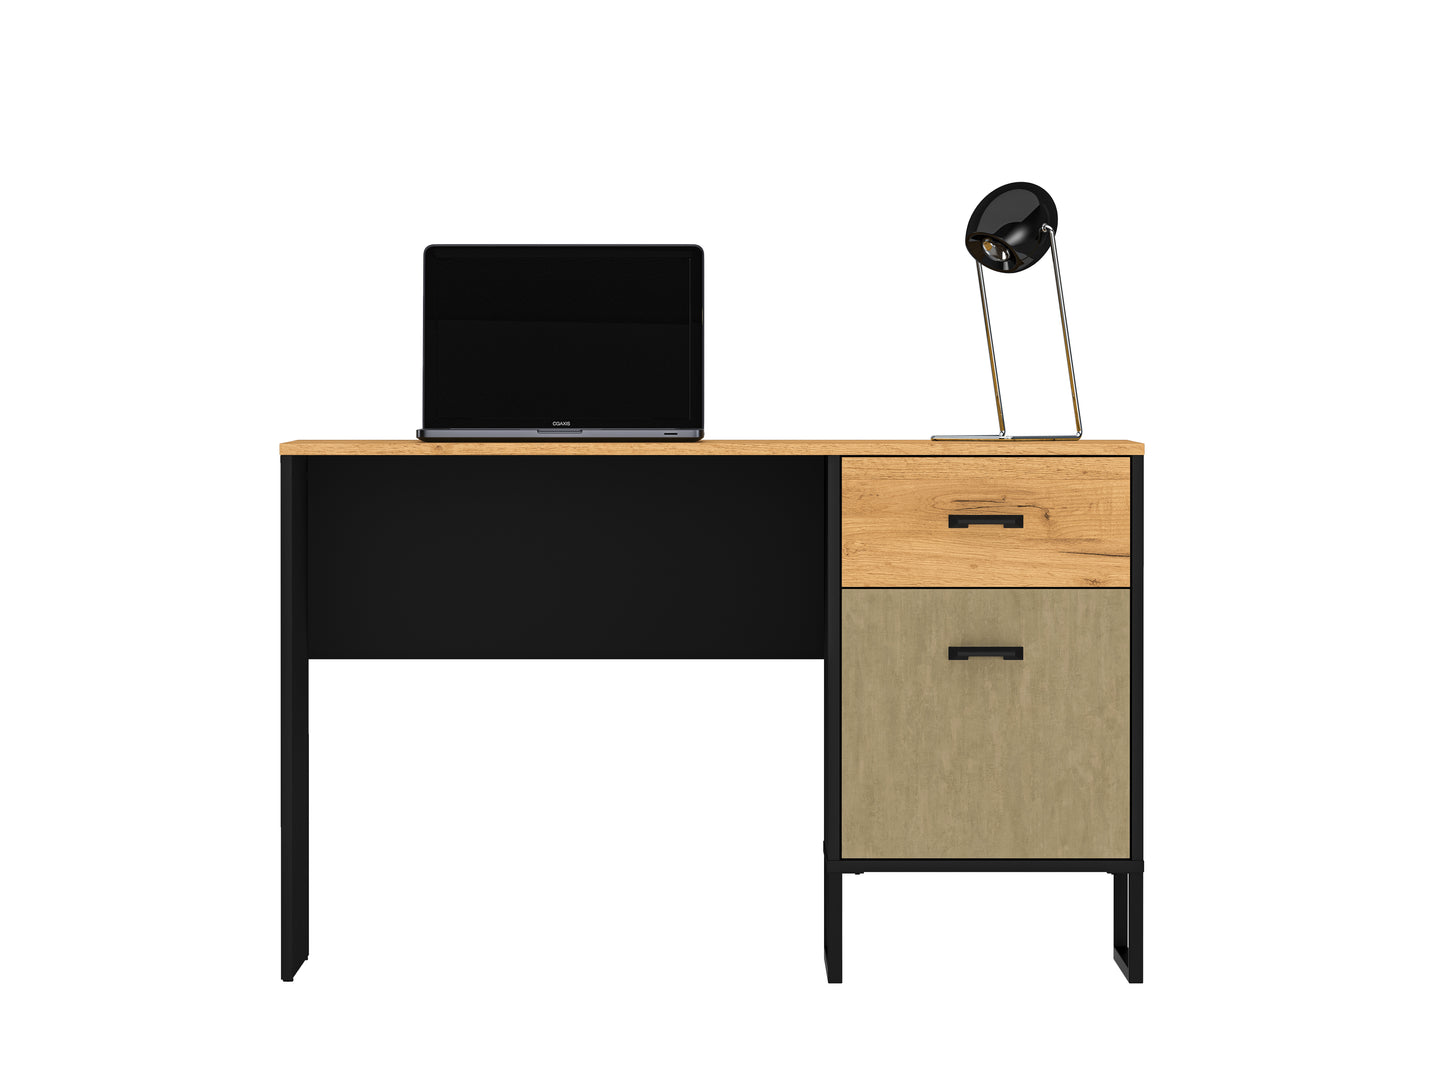 Zdjęcie przedstawiające biurko Kolt w przykładowej aranżacji z lampką biurową oraz laptopem. Szeroki blat 120 cm pozwoli na wygodną pracę lub naukę